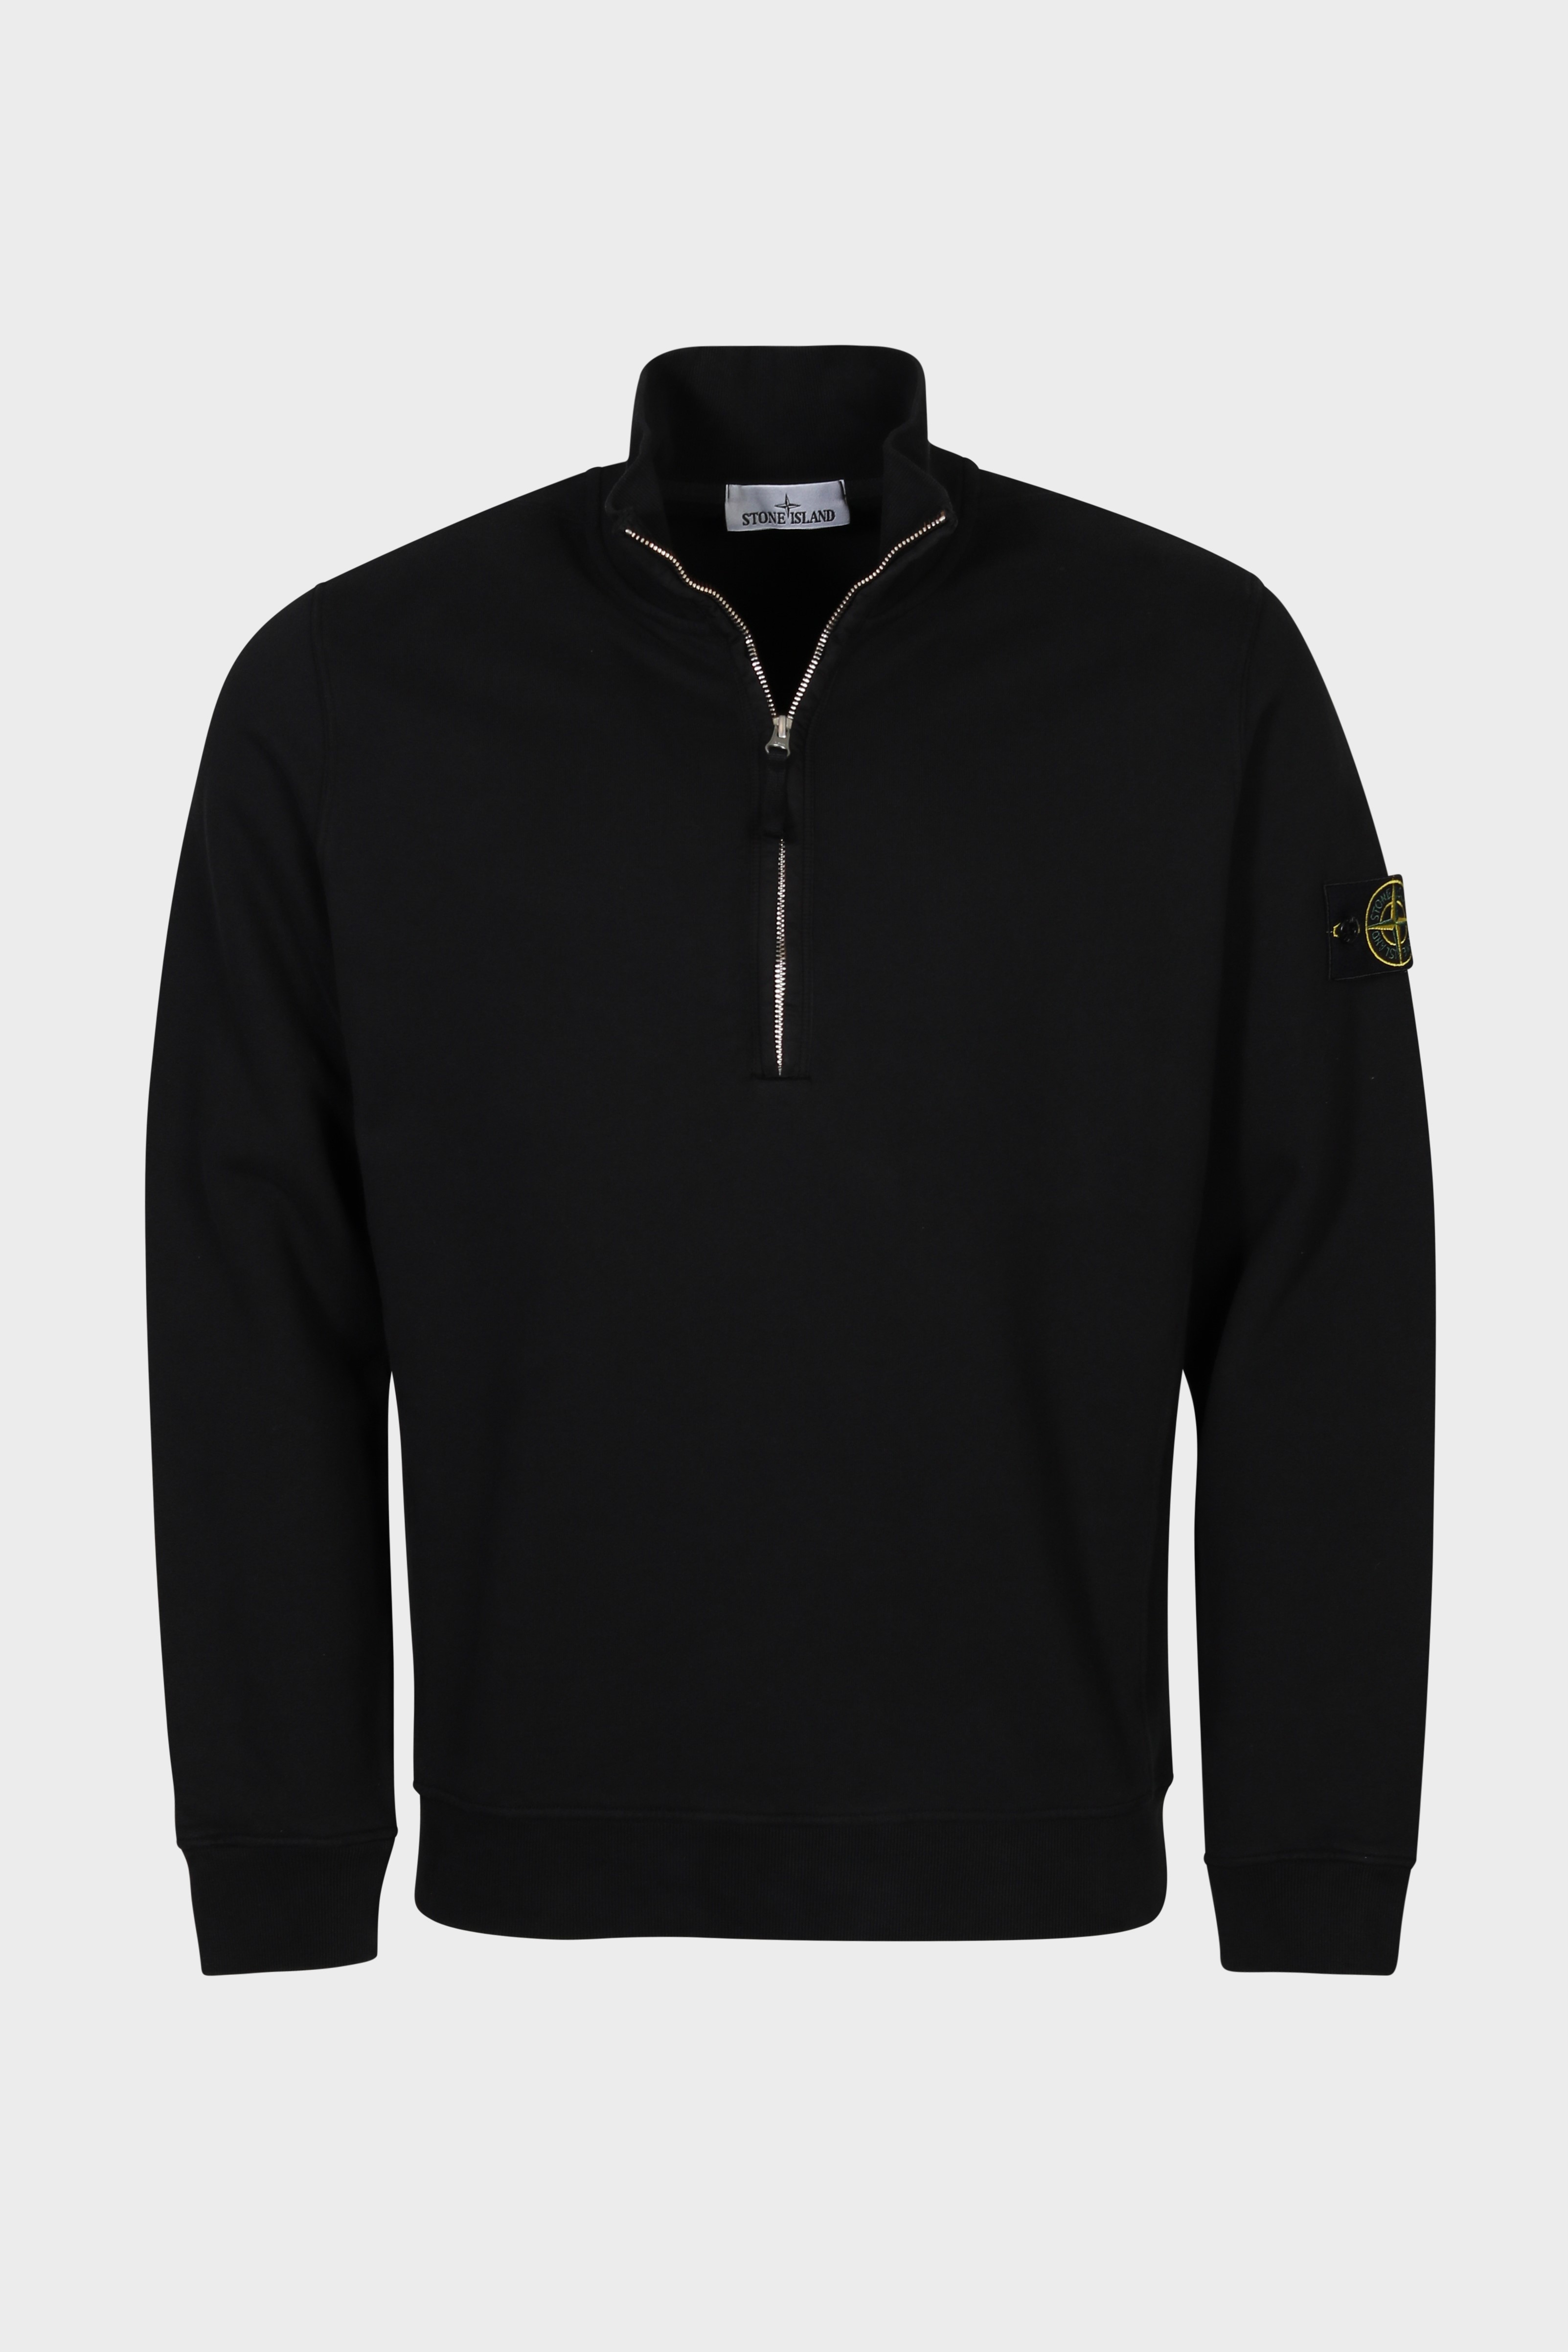 STONE ISLAND Half Zip Sweatshirt in Black